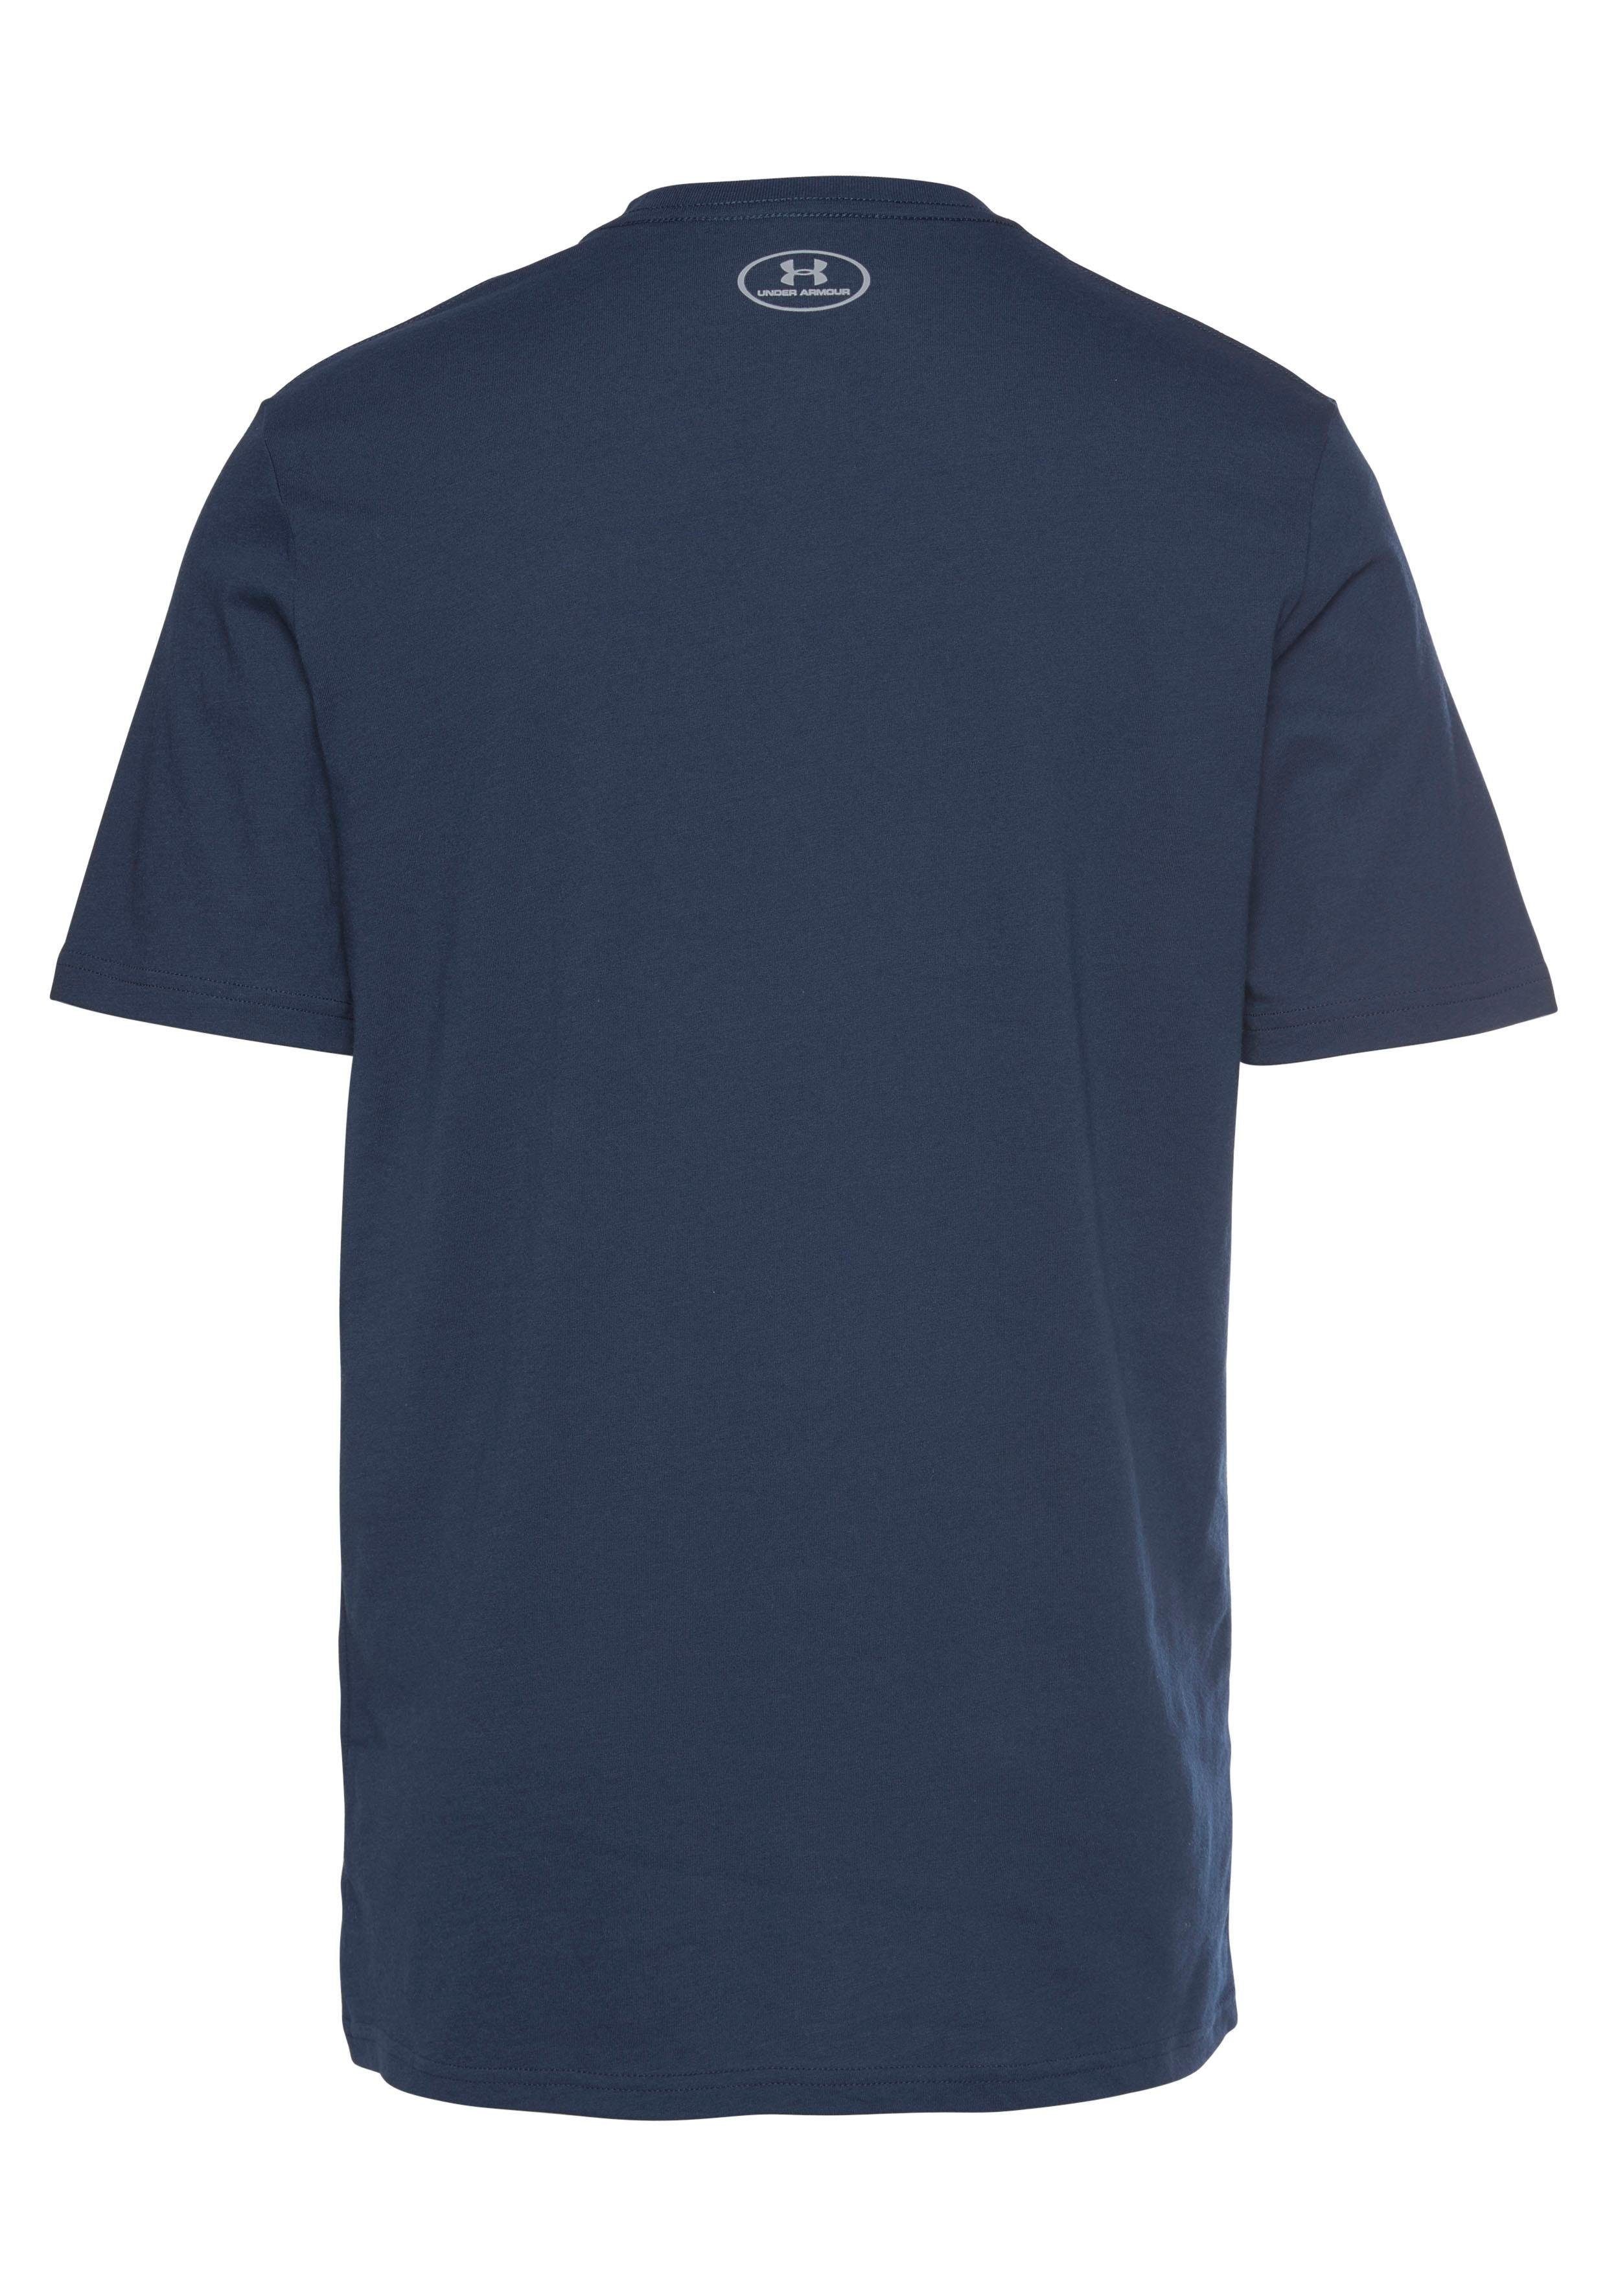 marine Under BOXED SPORTSTYLE SLEEVE UA Armour® T-Shirt SHORT